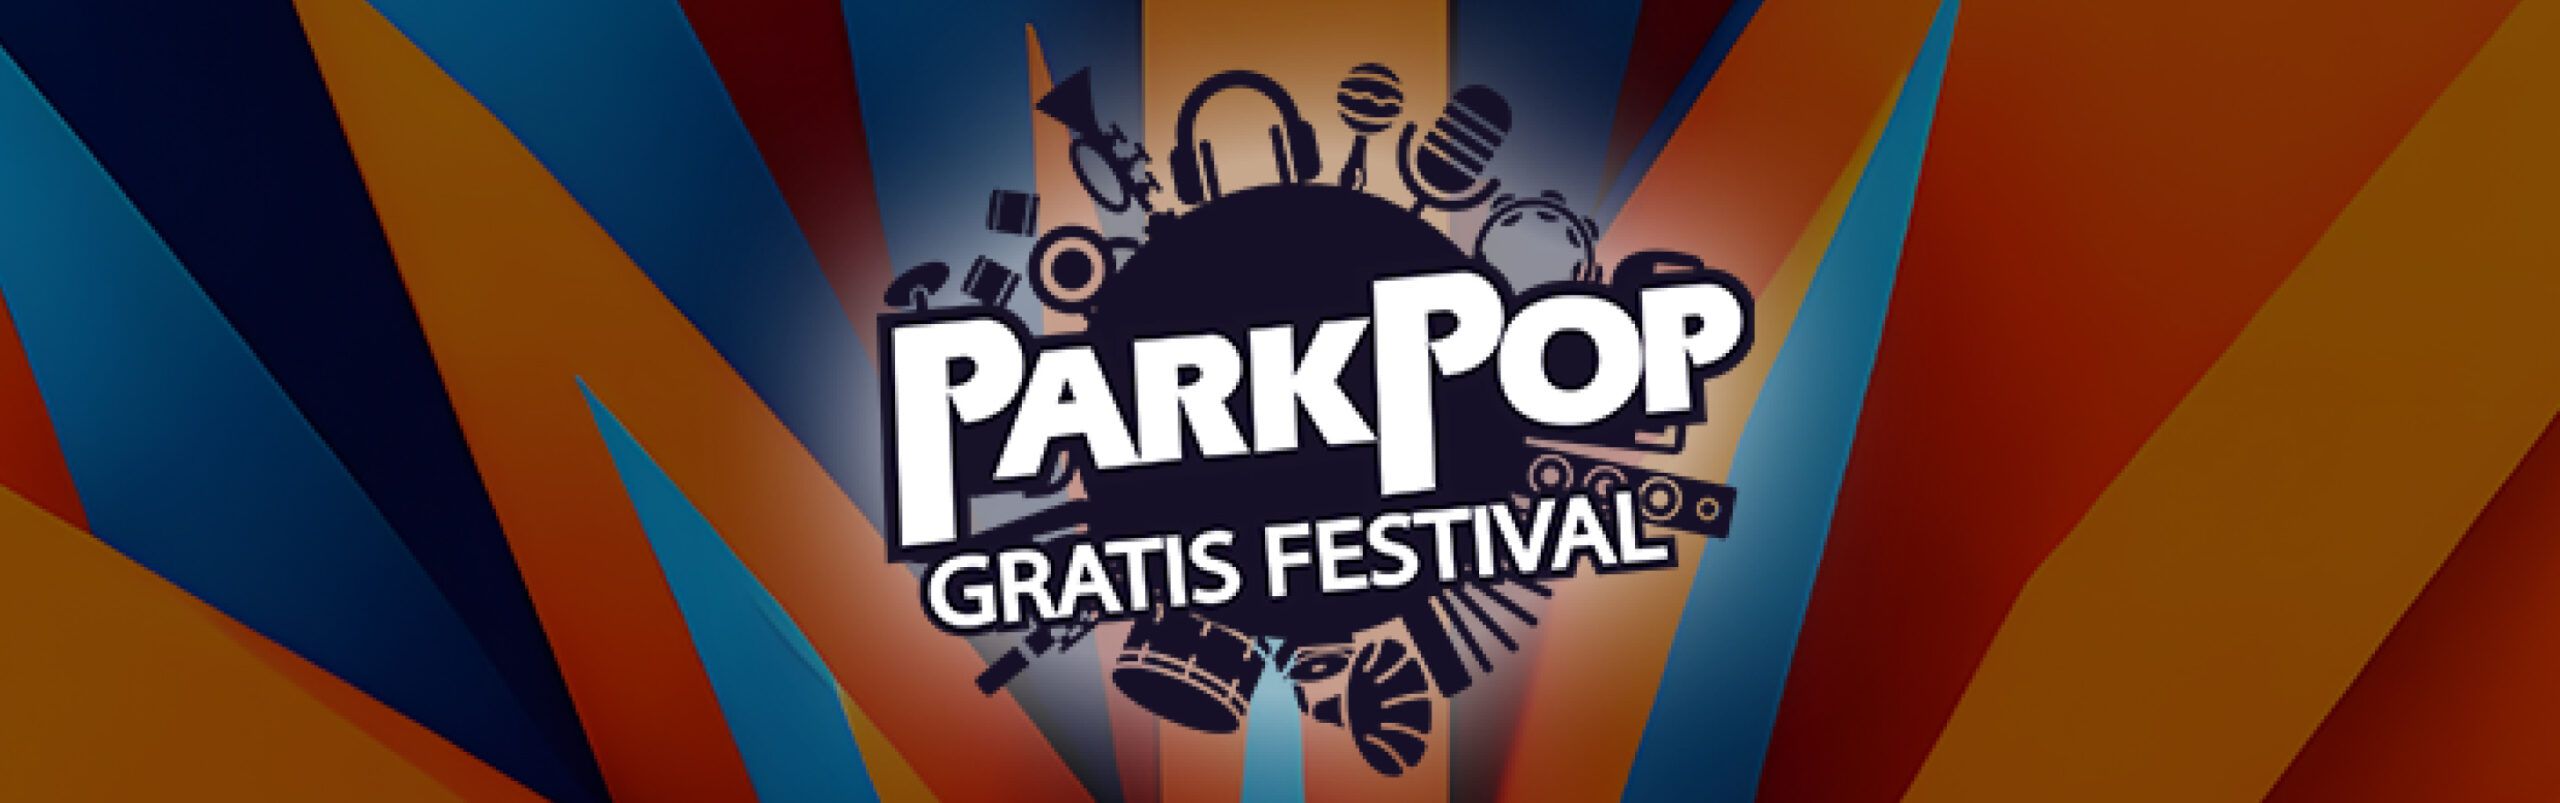 Parkpop Oostkamp header